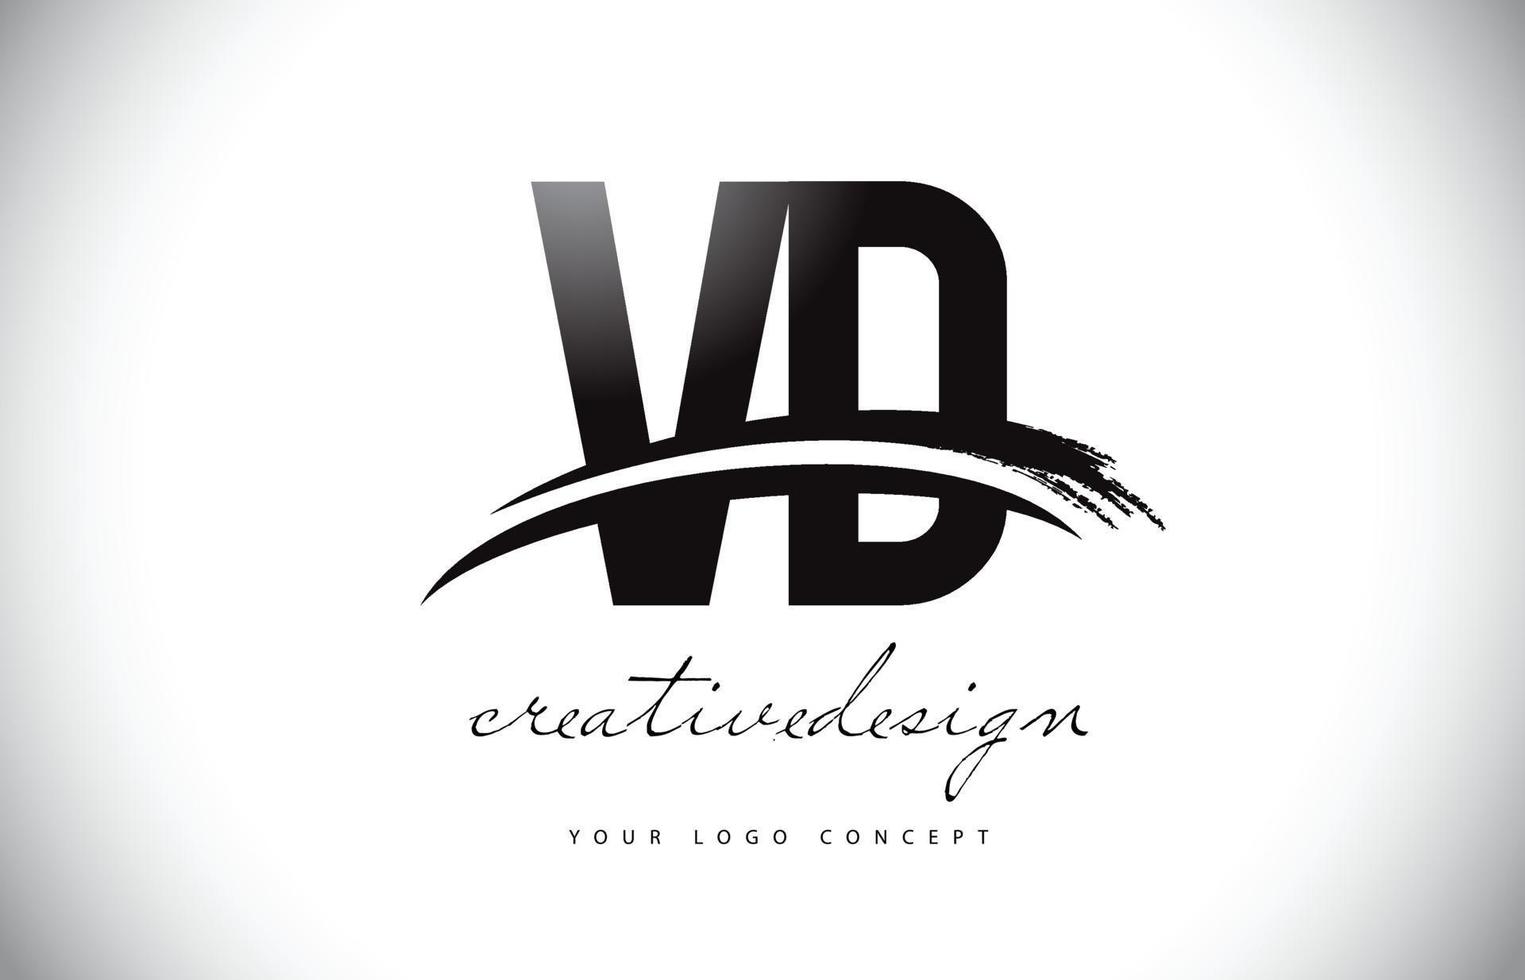 création de logo de lettre vd vd avec swoosh et coup de pinceau noir. vecteur